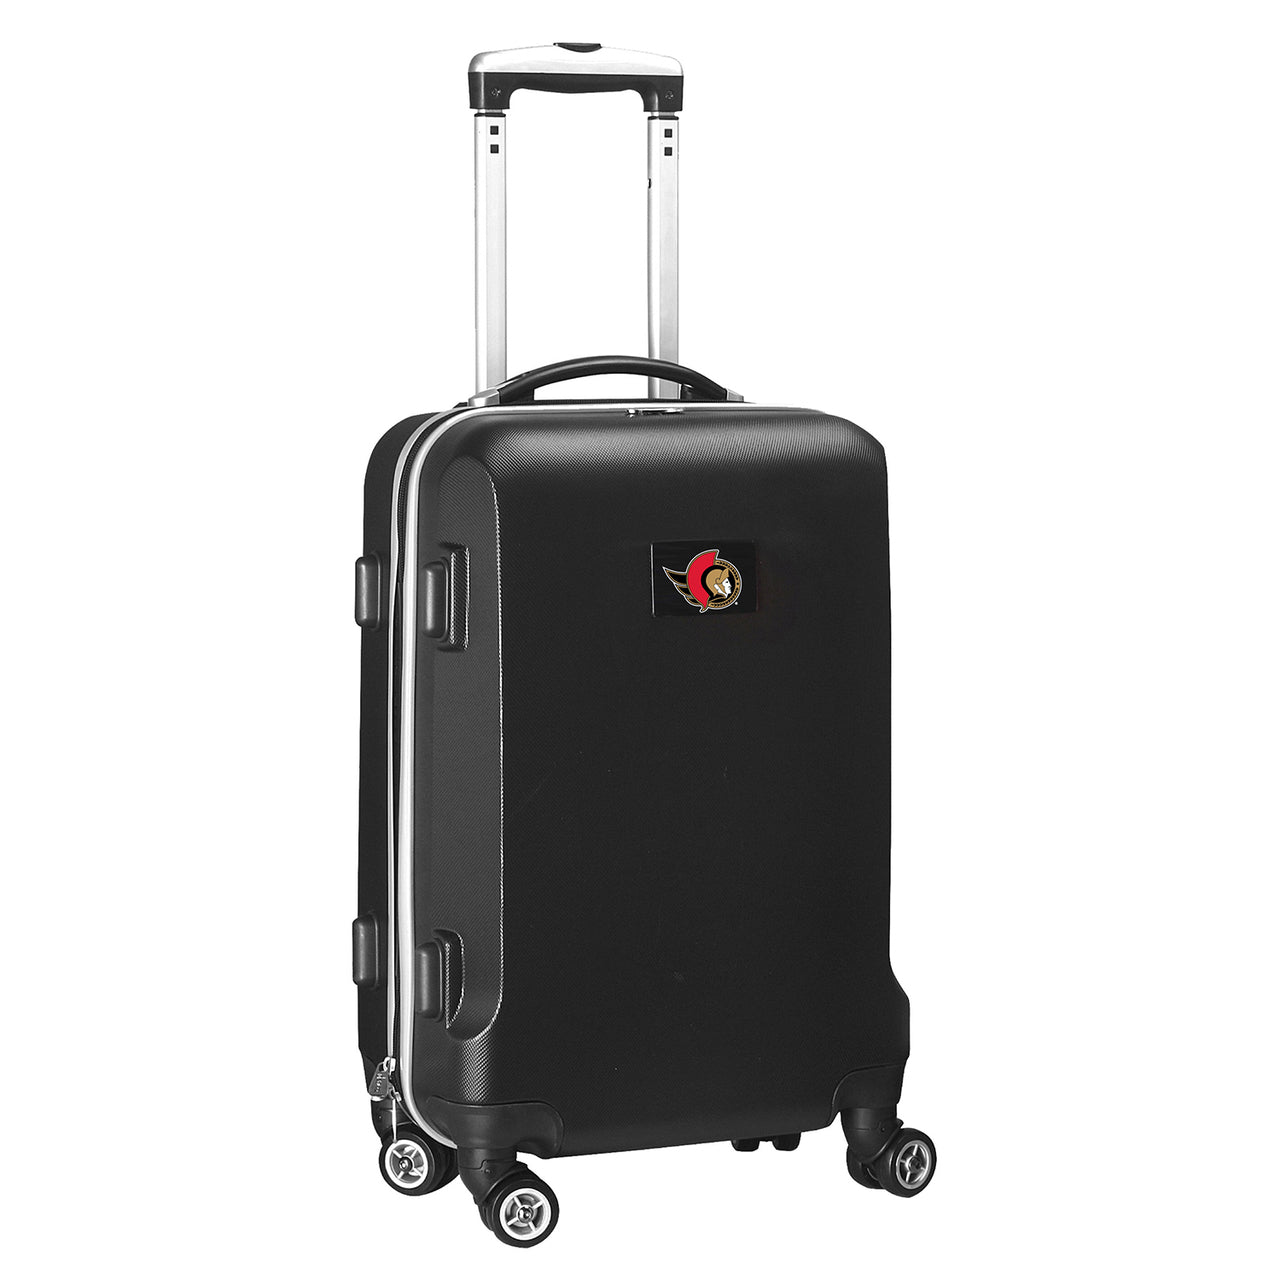 Ottawa Senators 20" Hardcase Luggage Carry-on Spinner